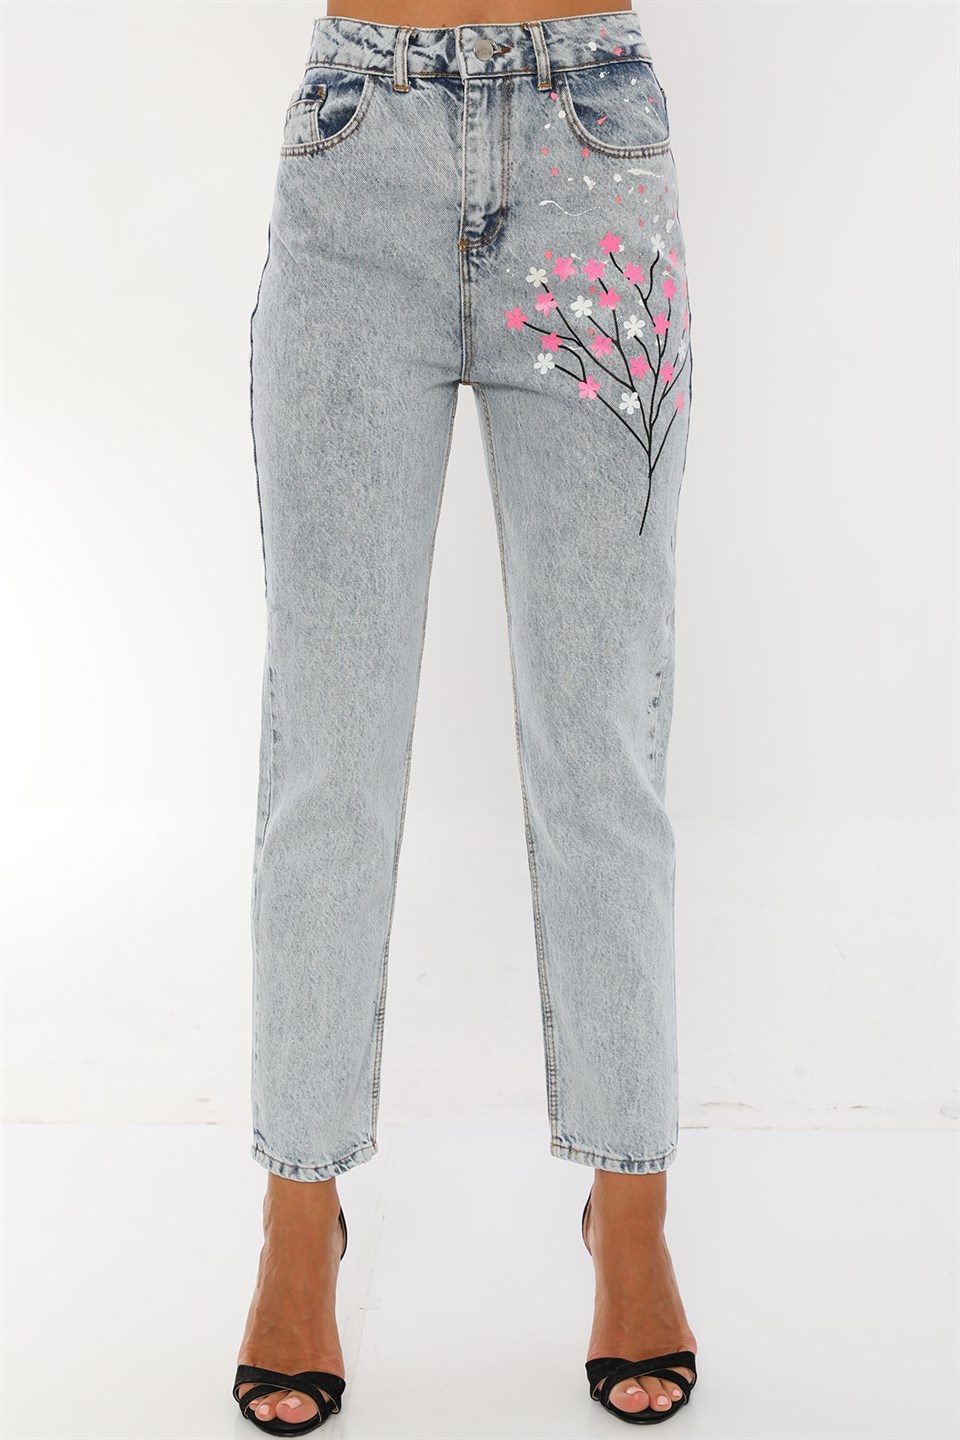 Kadın Yüksek Bel Çiçekli Özel El Boyaması Mom Jeans Kot Pantolon |  PodiumStar